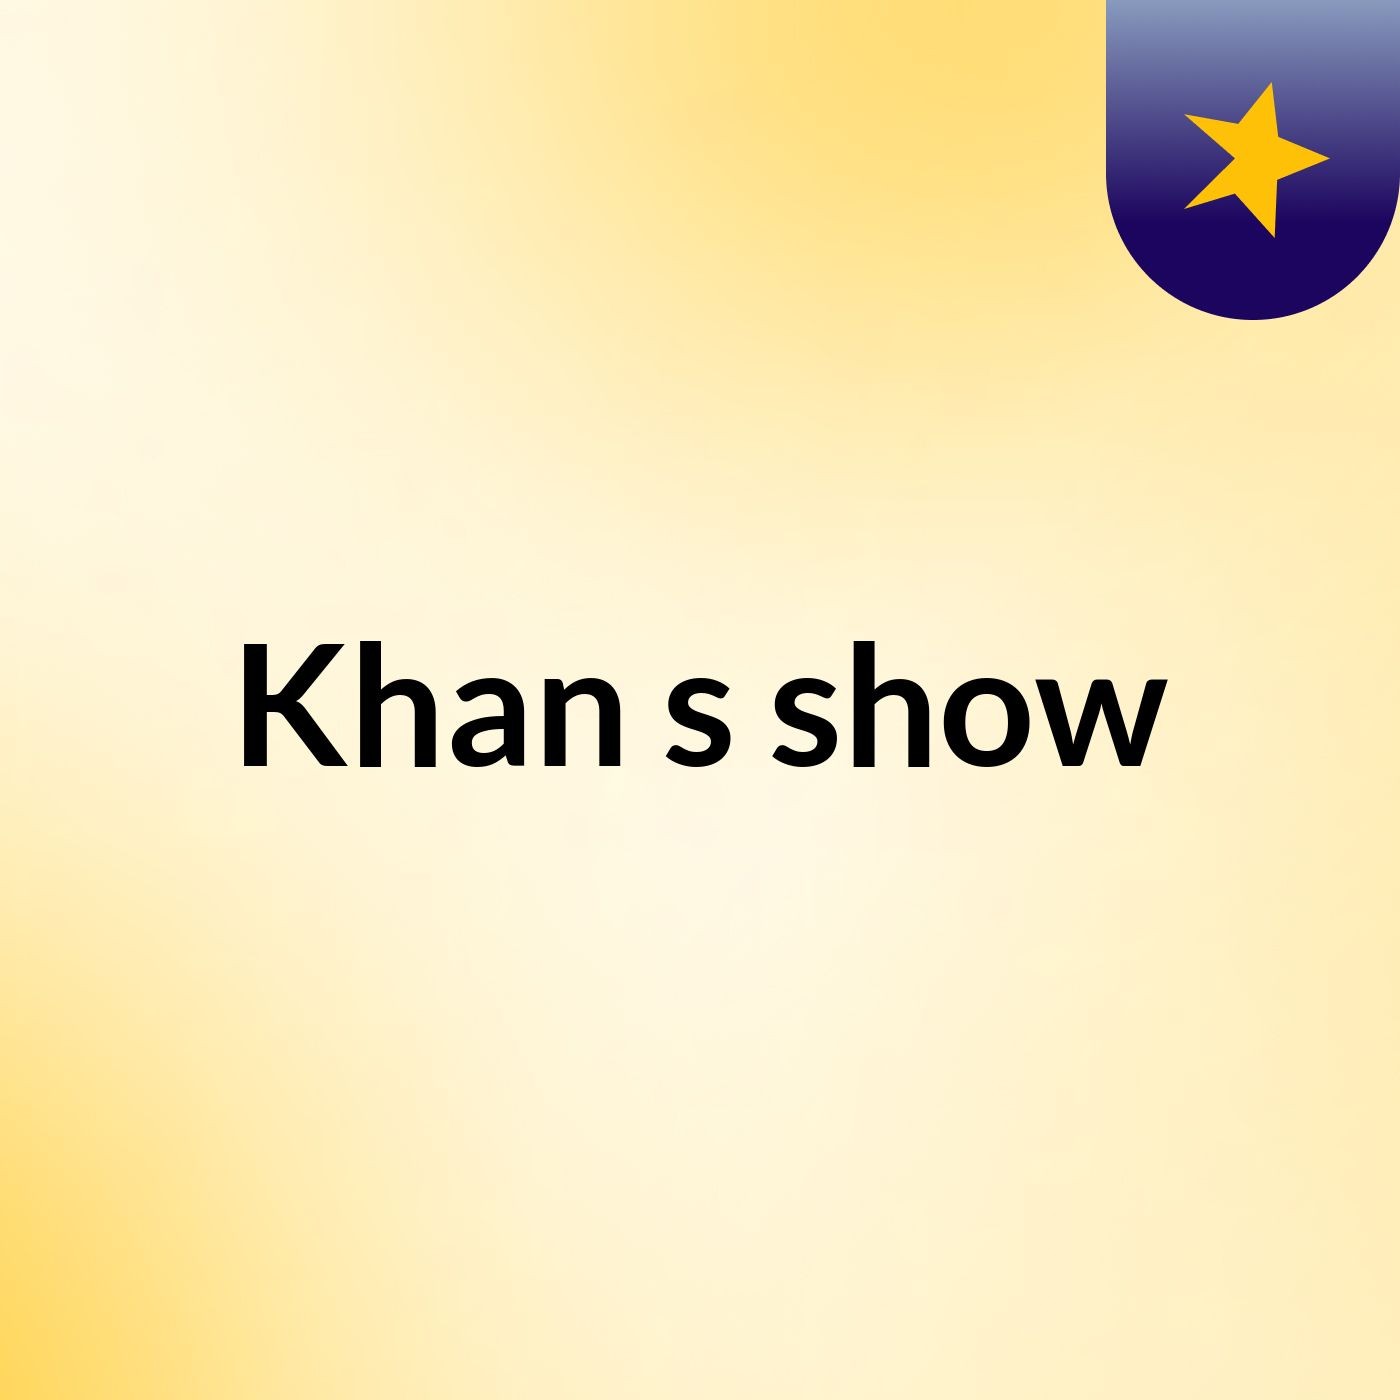 Khan's show